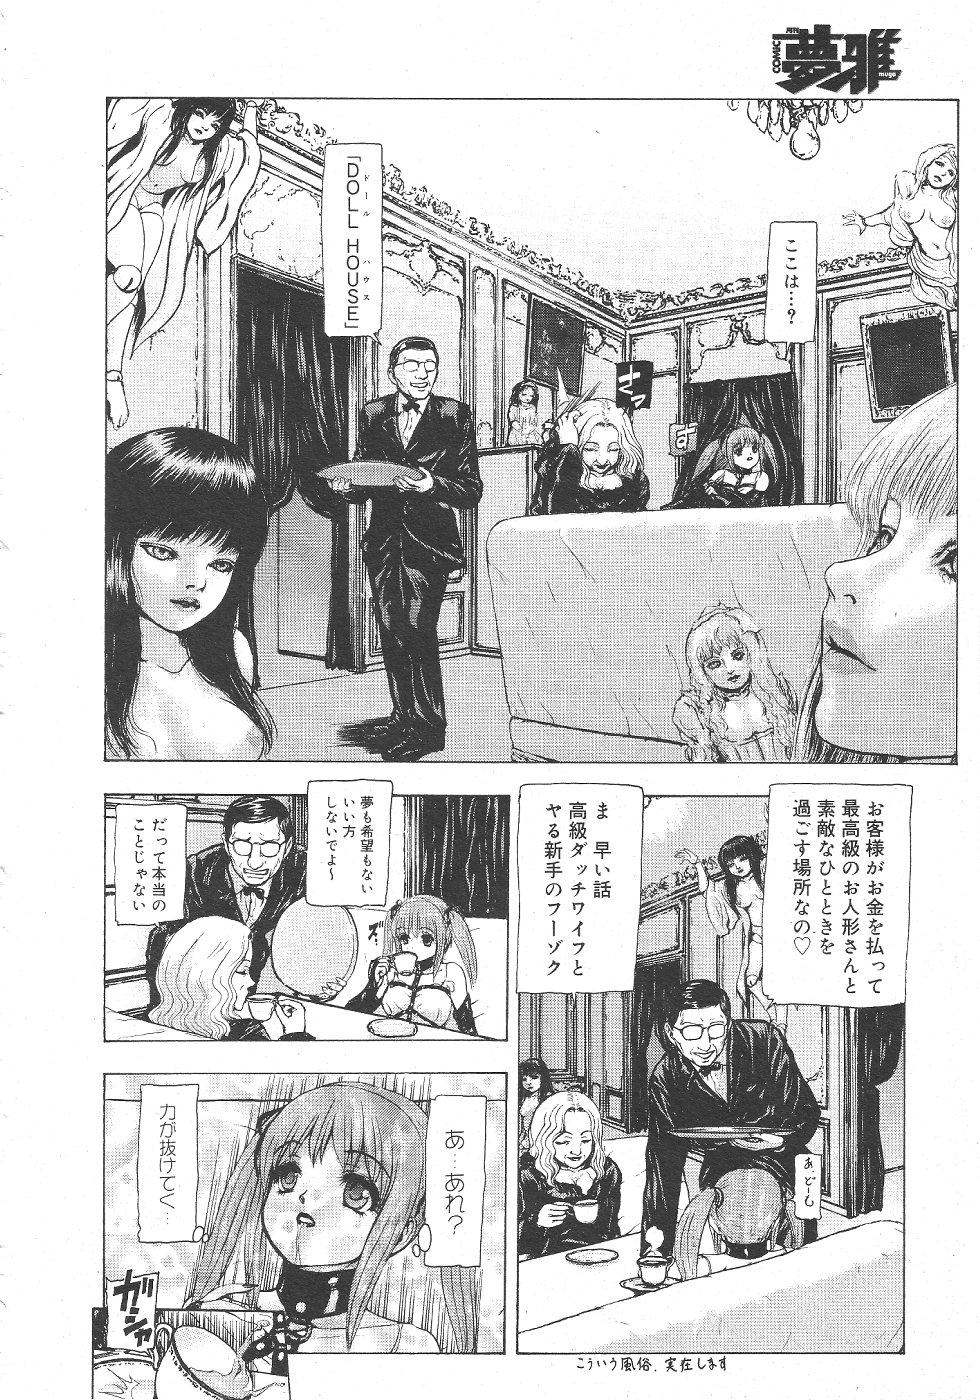 Gekkan Comic Muga 2004-06 Vol.10 155